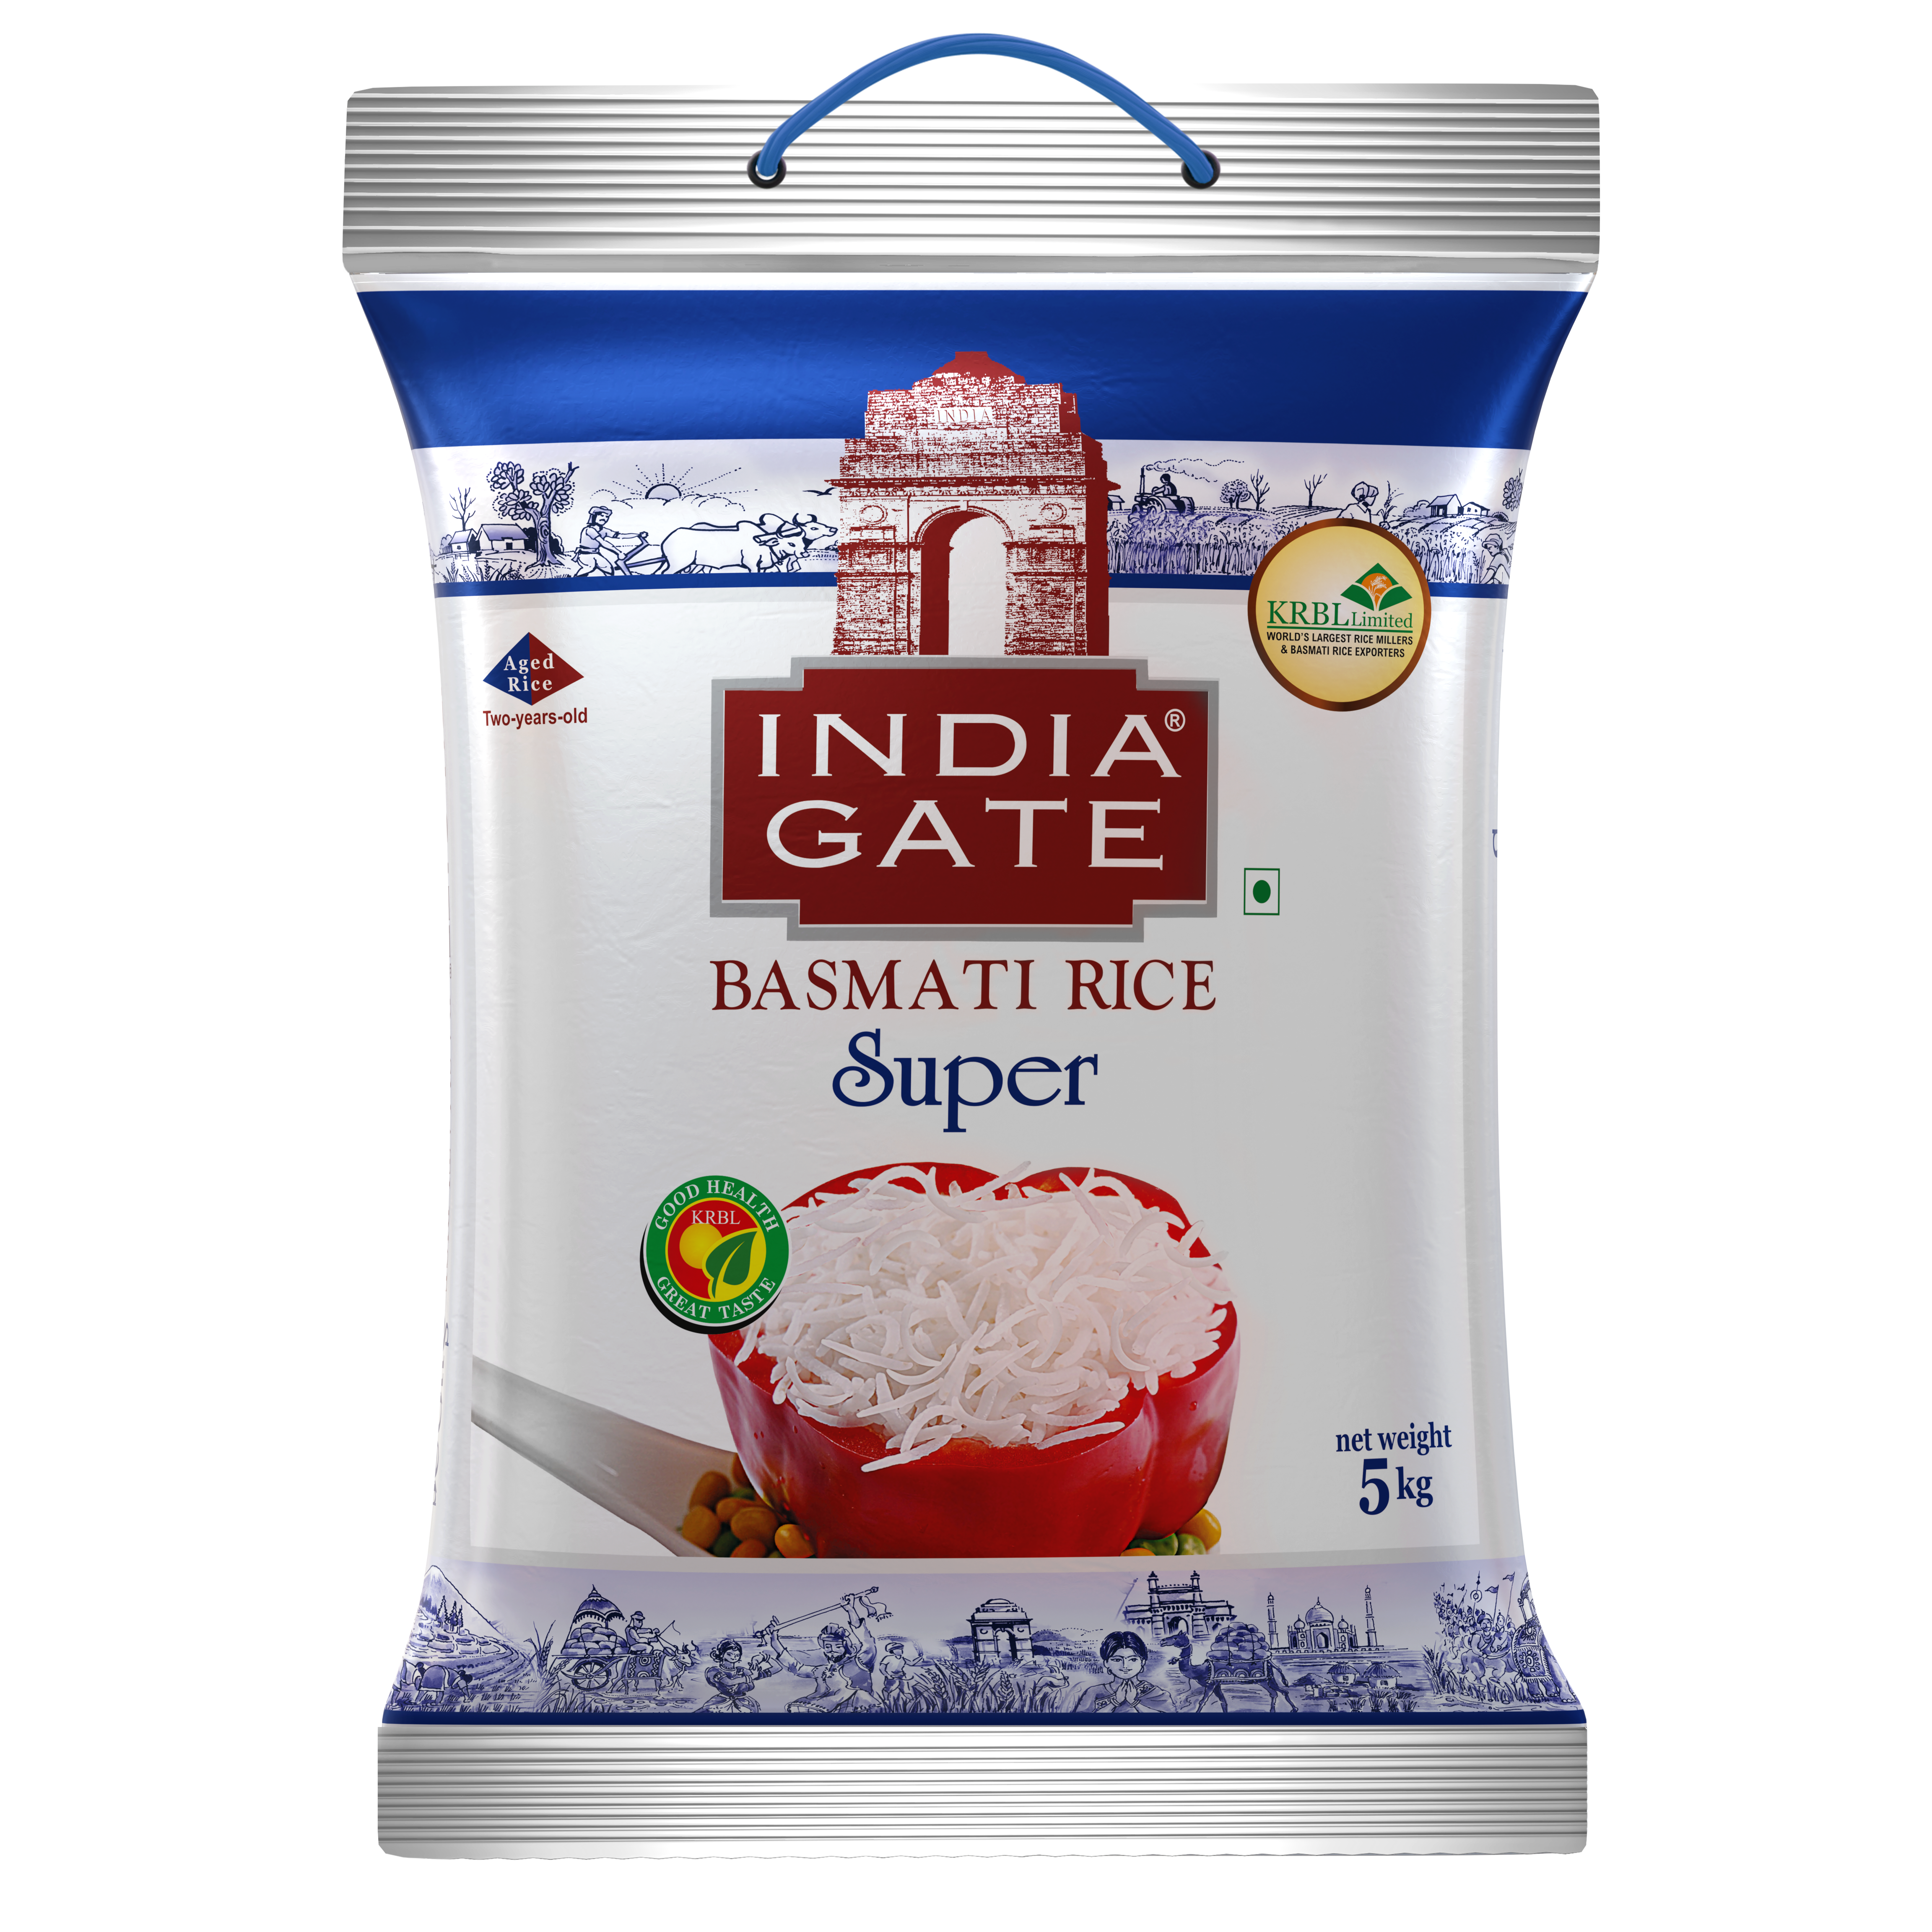 India Gate Super Basmati Rice